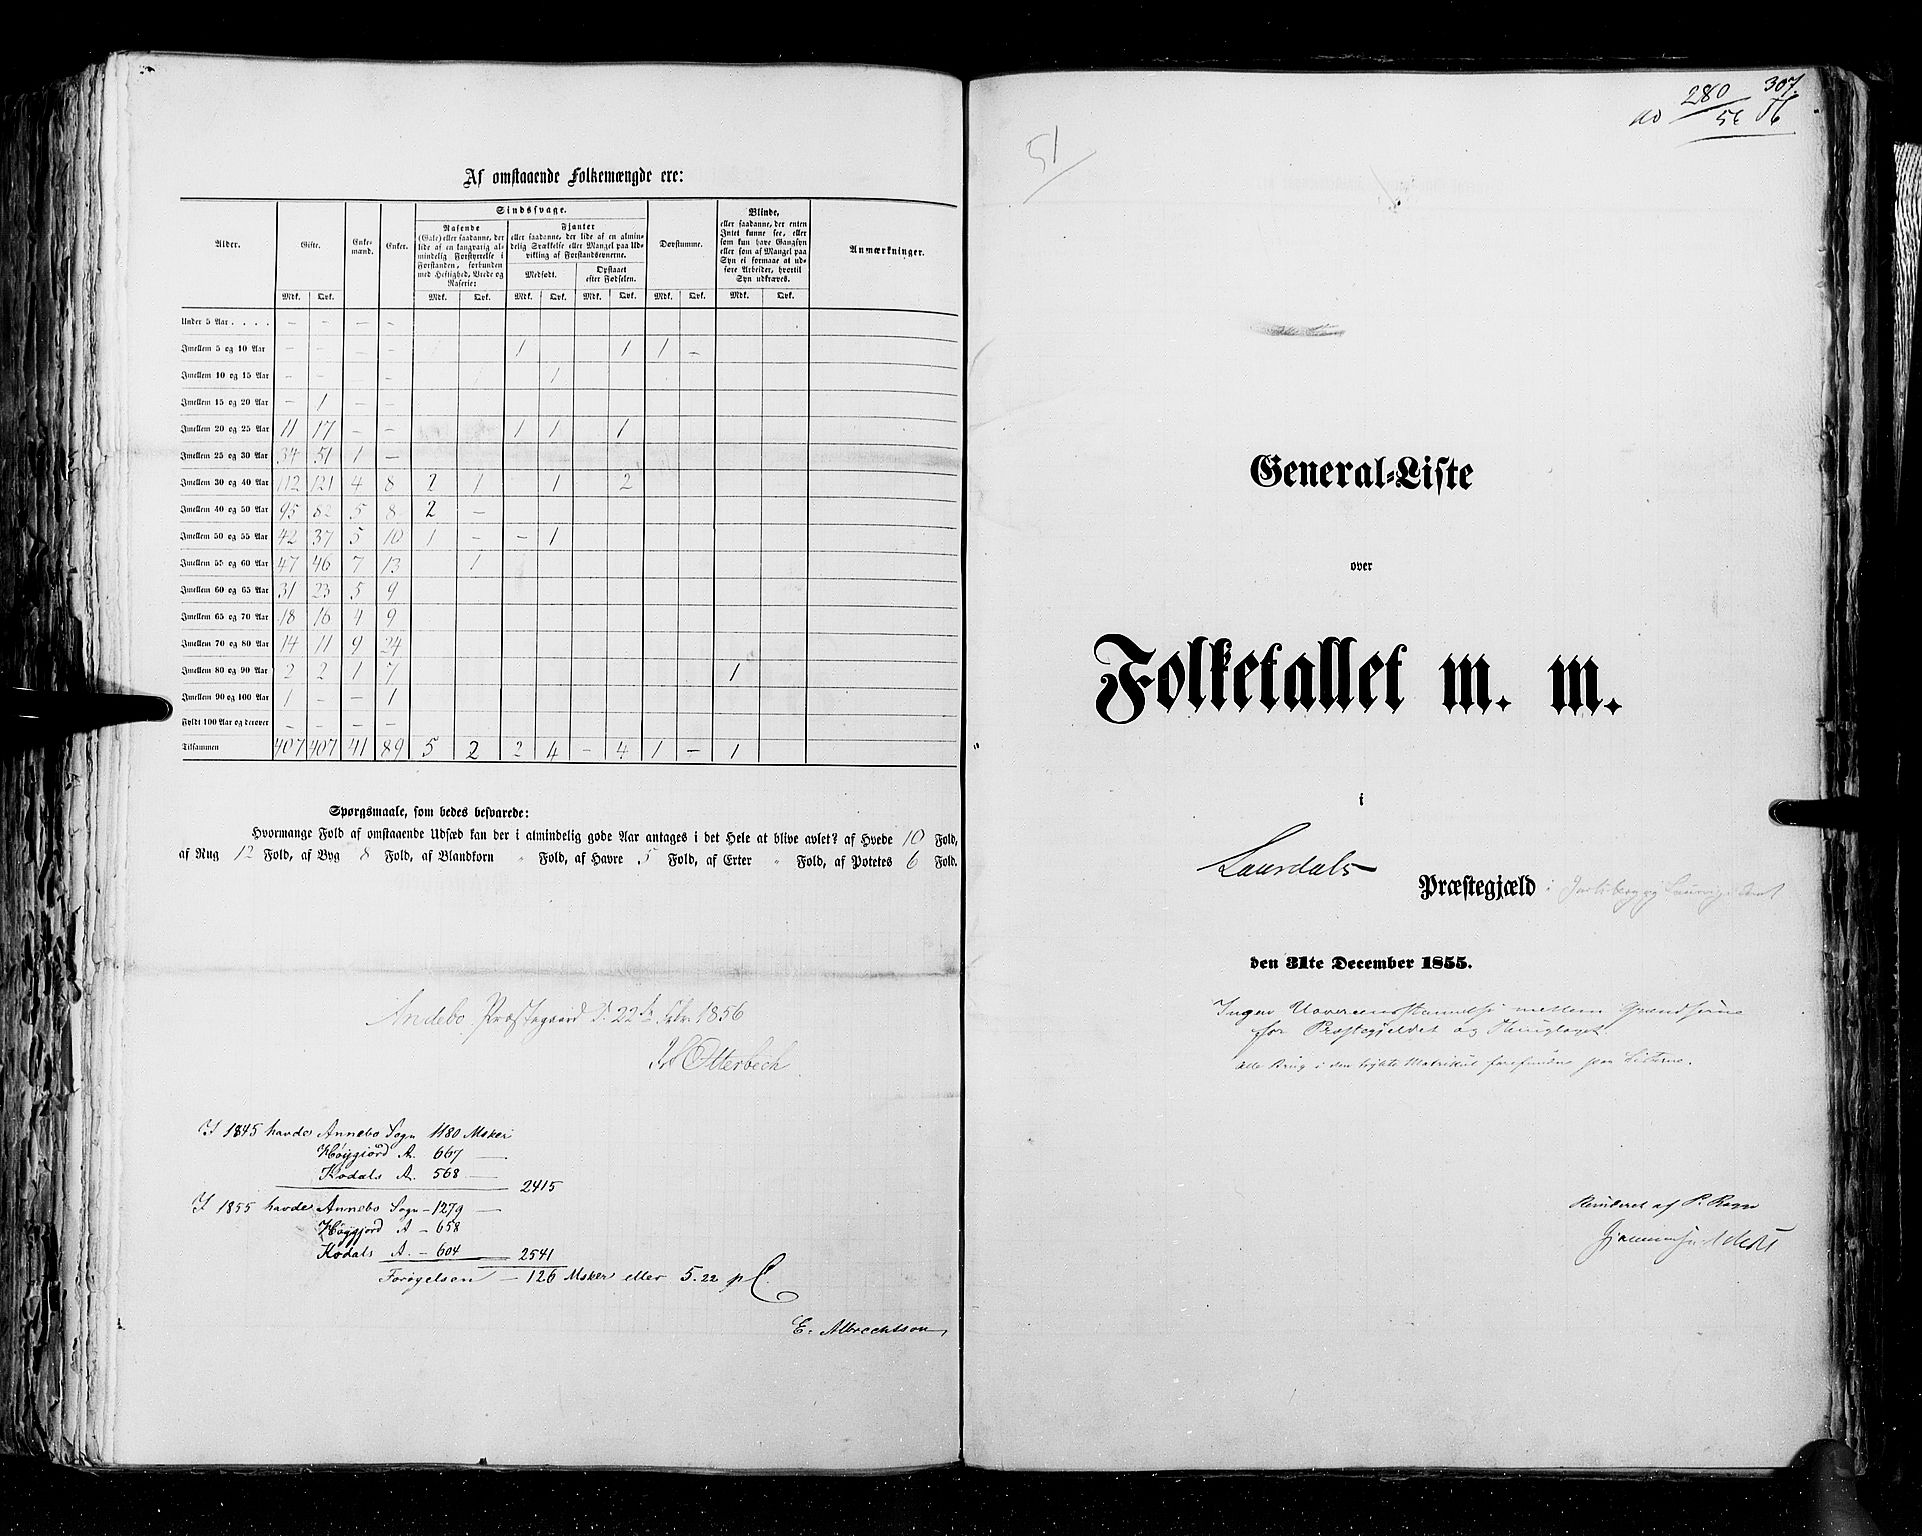 RA, Folketellingen 1855, bind 2: Kristians amt, Buskerud amt og Jarlsberg og Larvik amt, 1855, s. 307